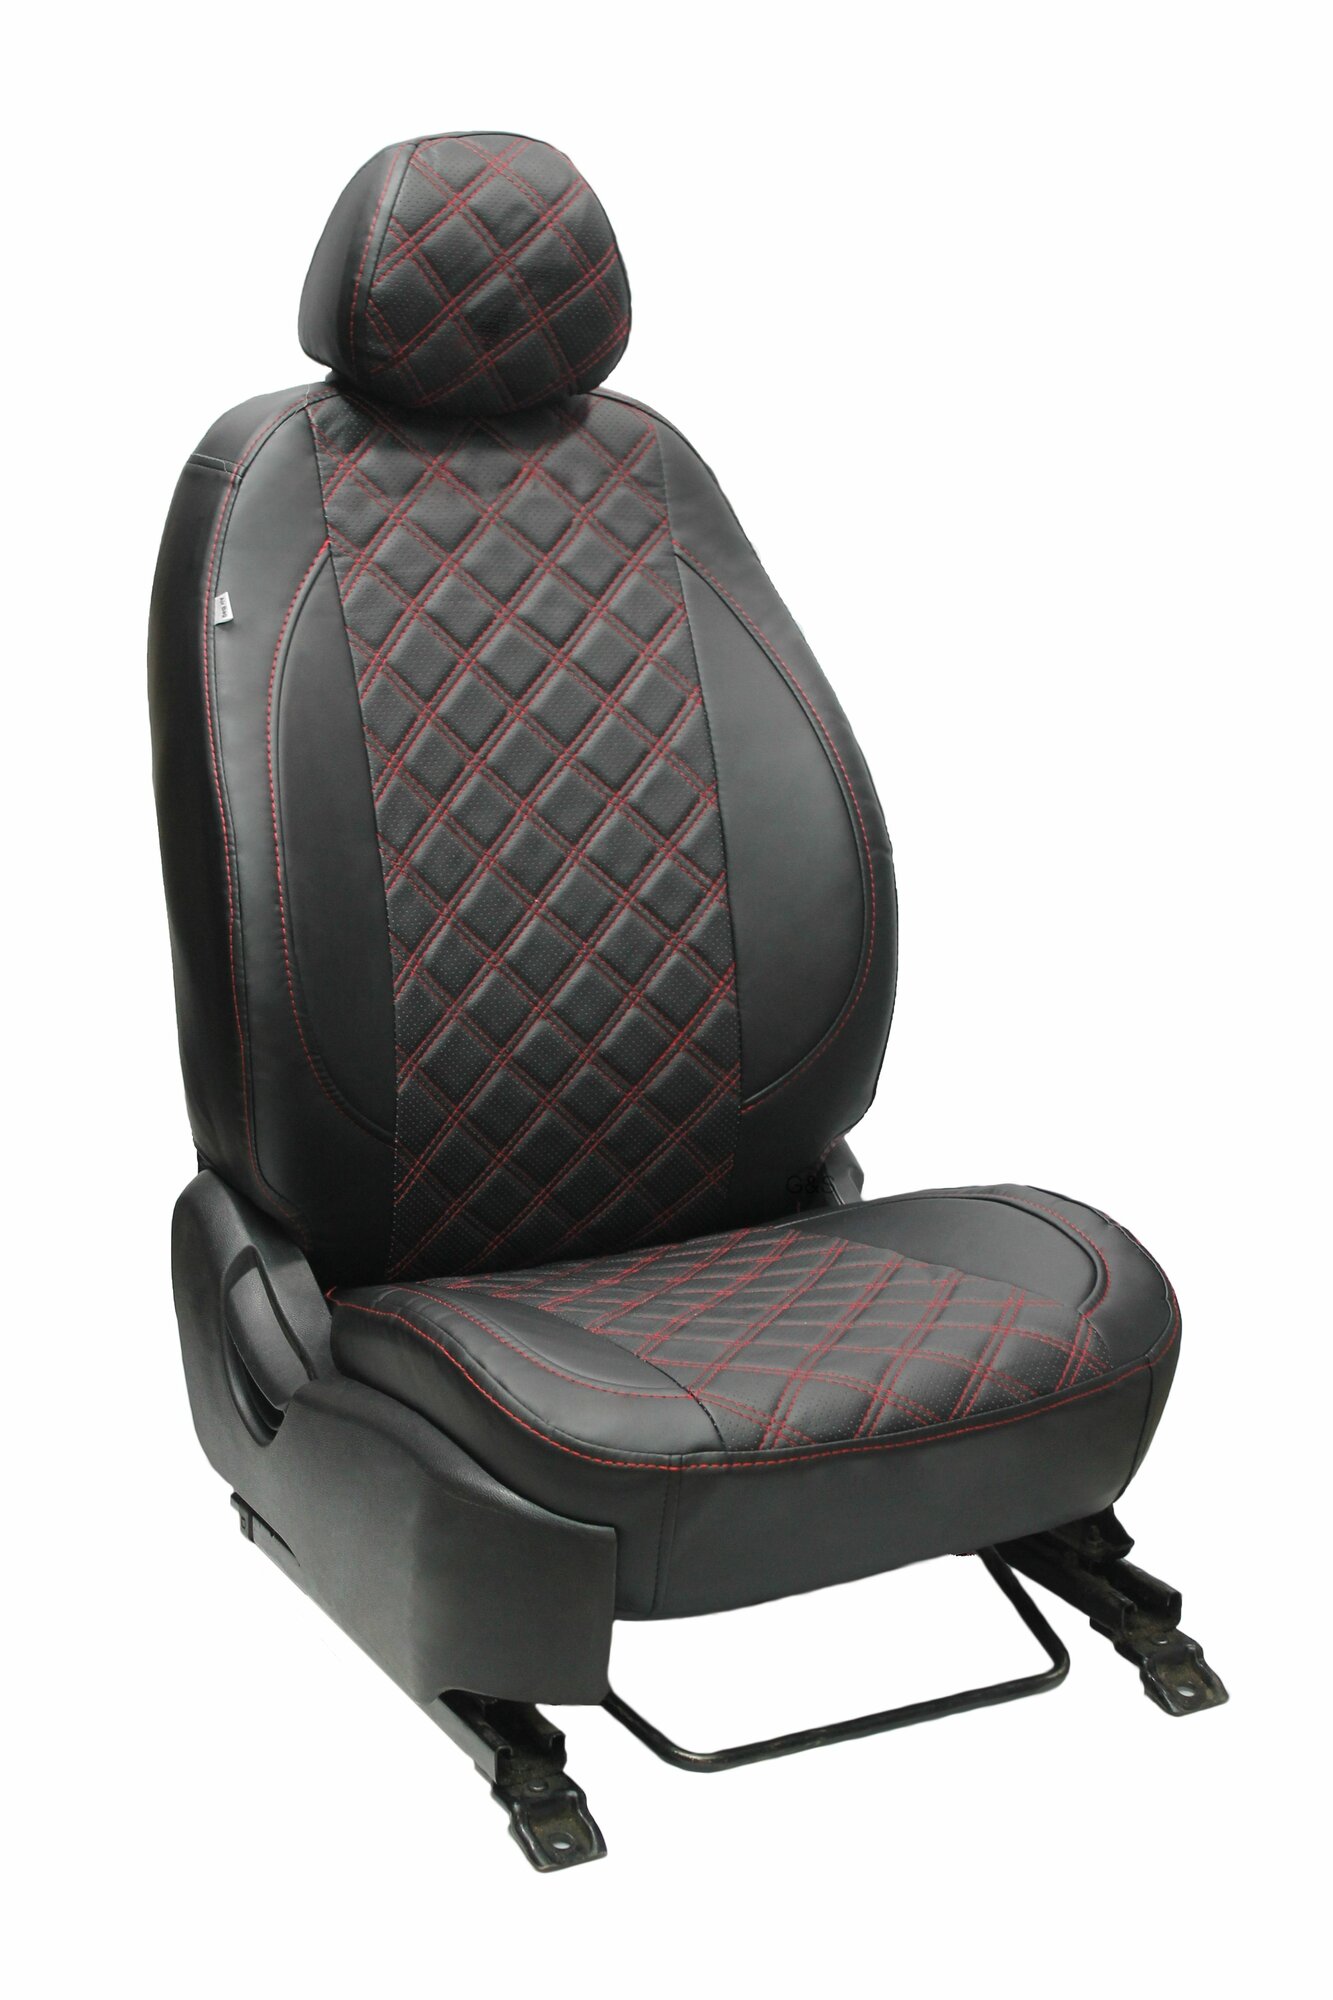 Чехлы для автомобильных сидений комплект Premium на SKODA RAPID (2012-н. в.) седан, авточехлы модельные экокожа, задняя спинка сплошная, черный ромб красная нить (Шкода Рапид)